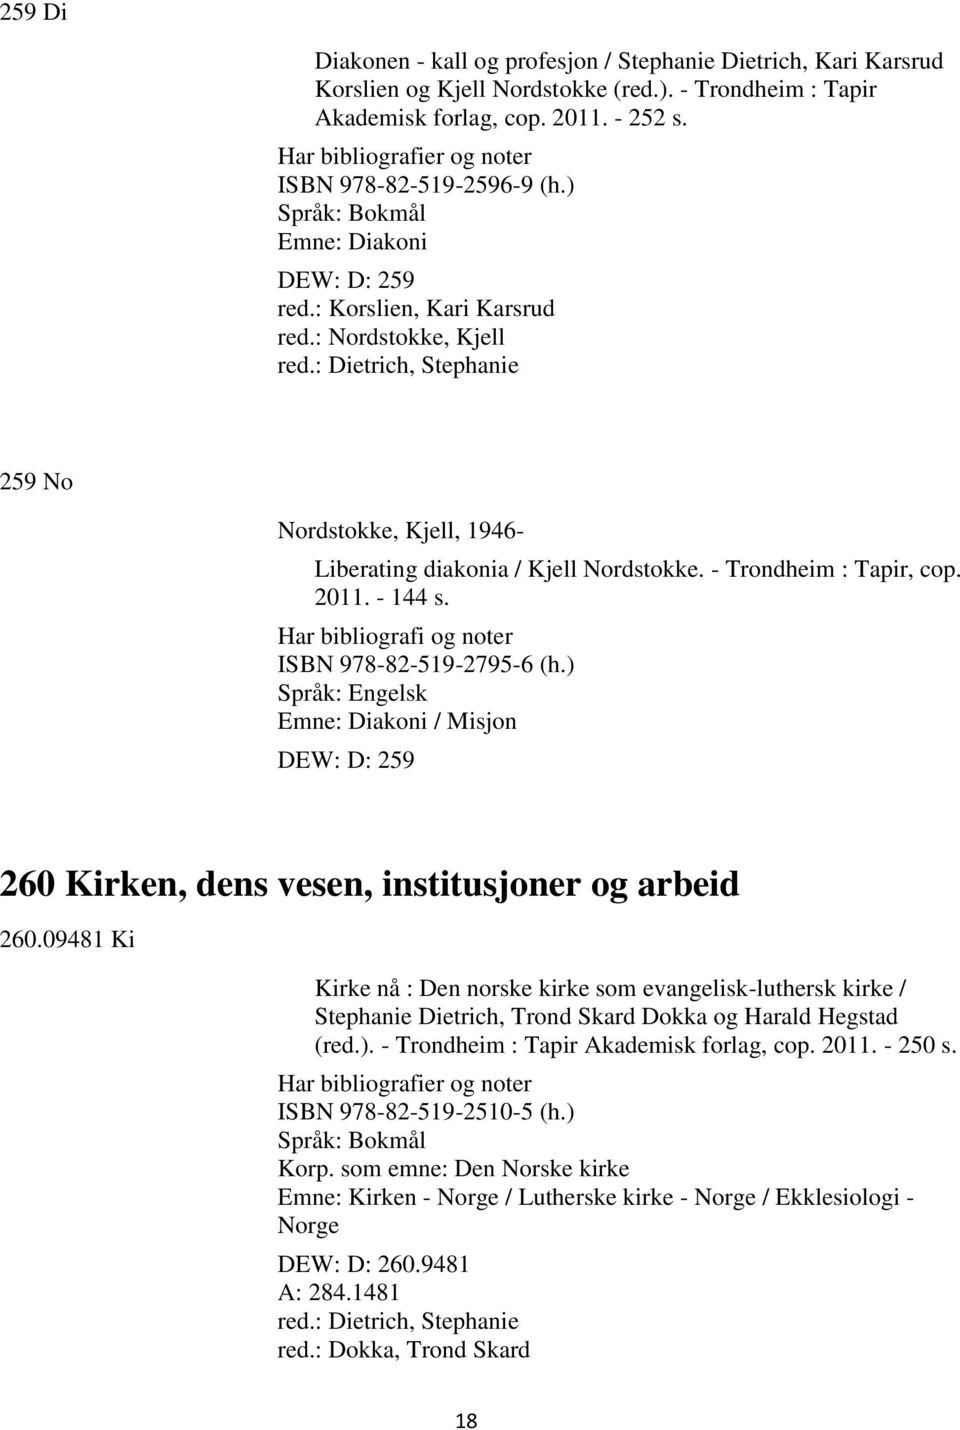 : Dietrich, Stephanie 259 No Nordstokke, Kjell, 1946- Liberating diakonia / Kjell Nordstokke. - Trondheim : Tapir, cop. 2011. - 144 s. Har bibliografi og noter ISBN 978-82-519-2795-6 (h.